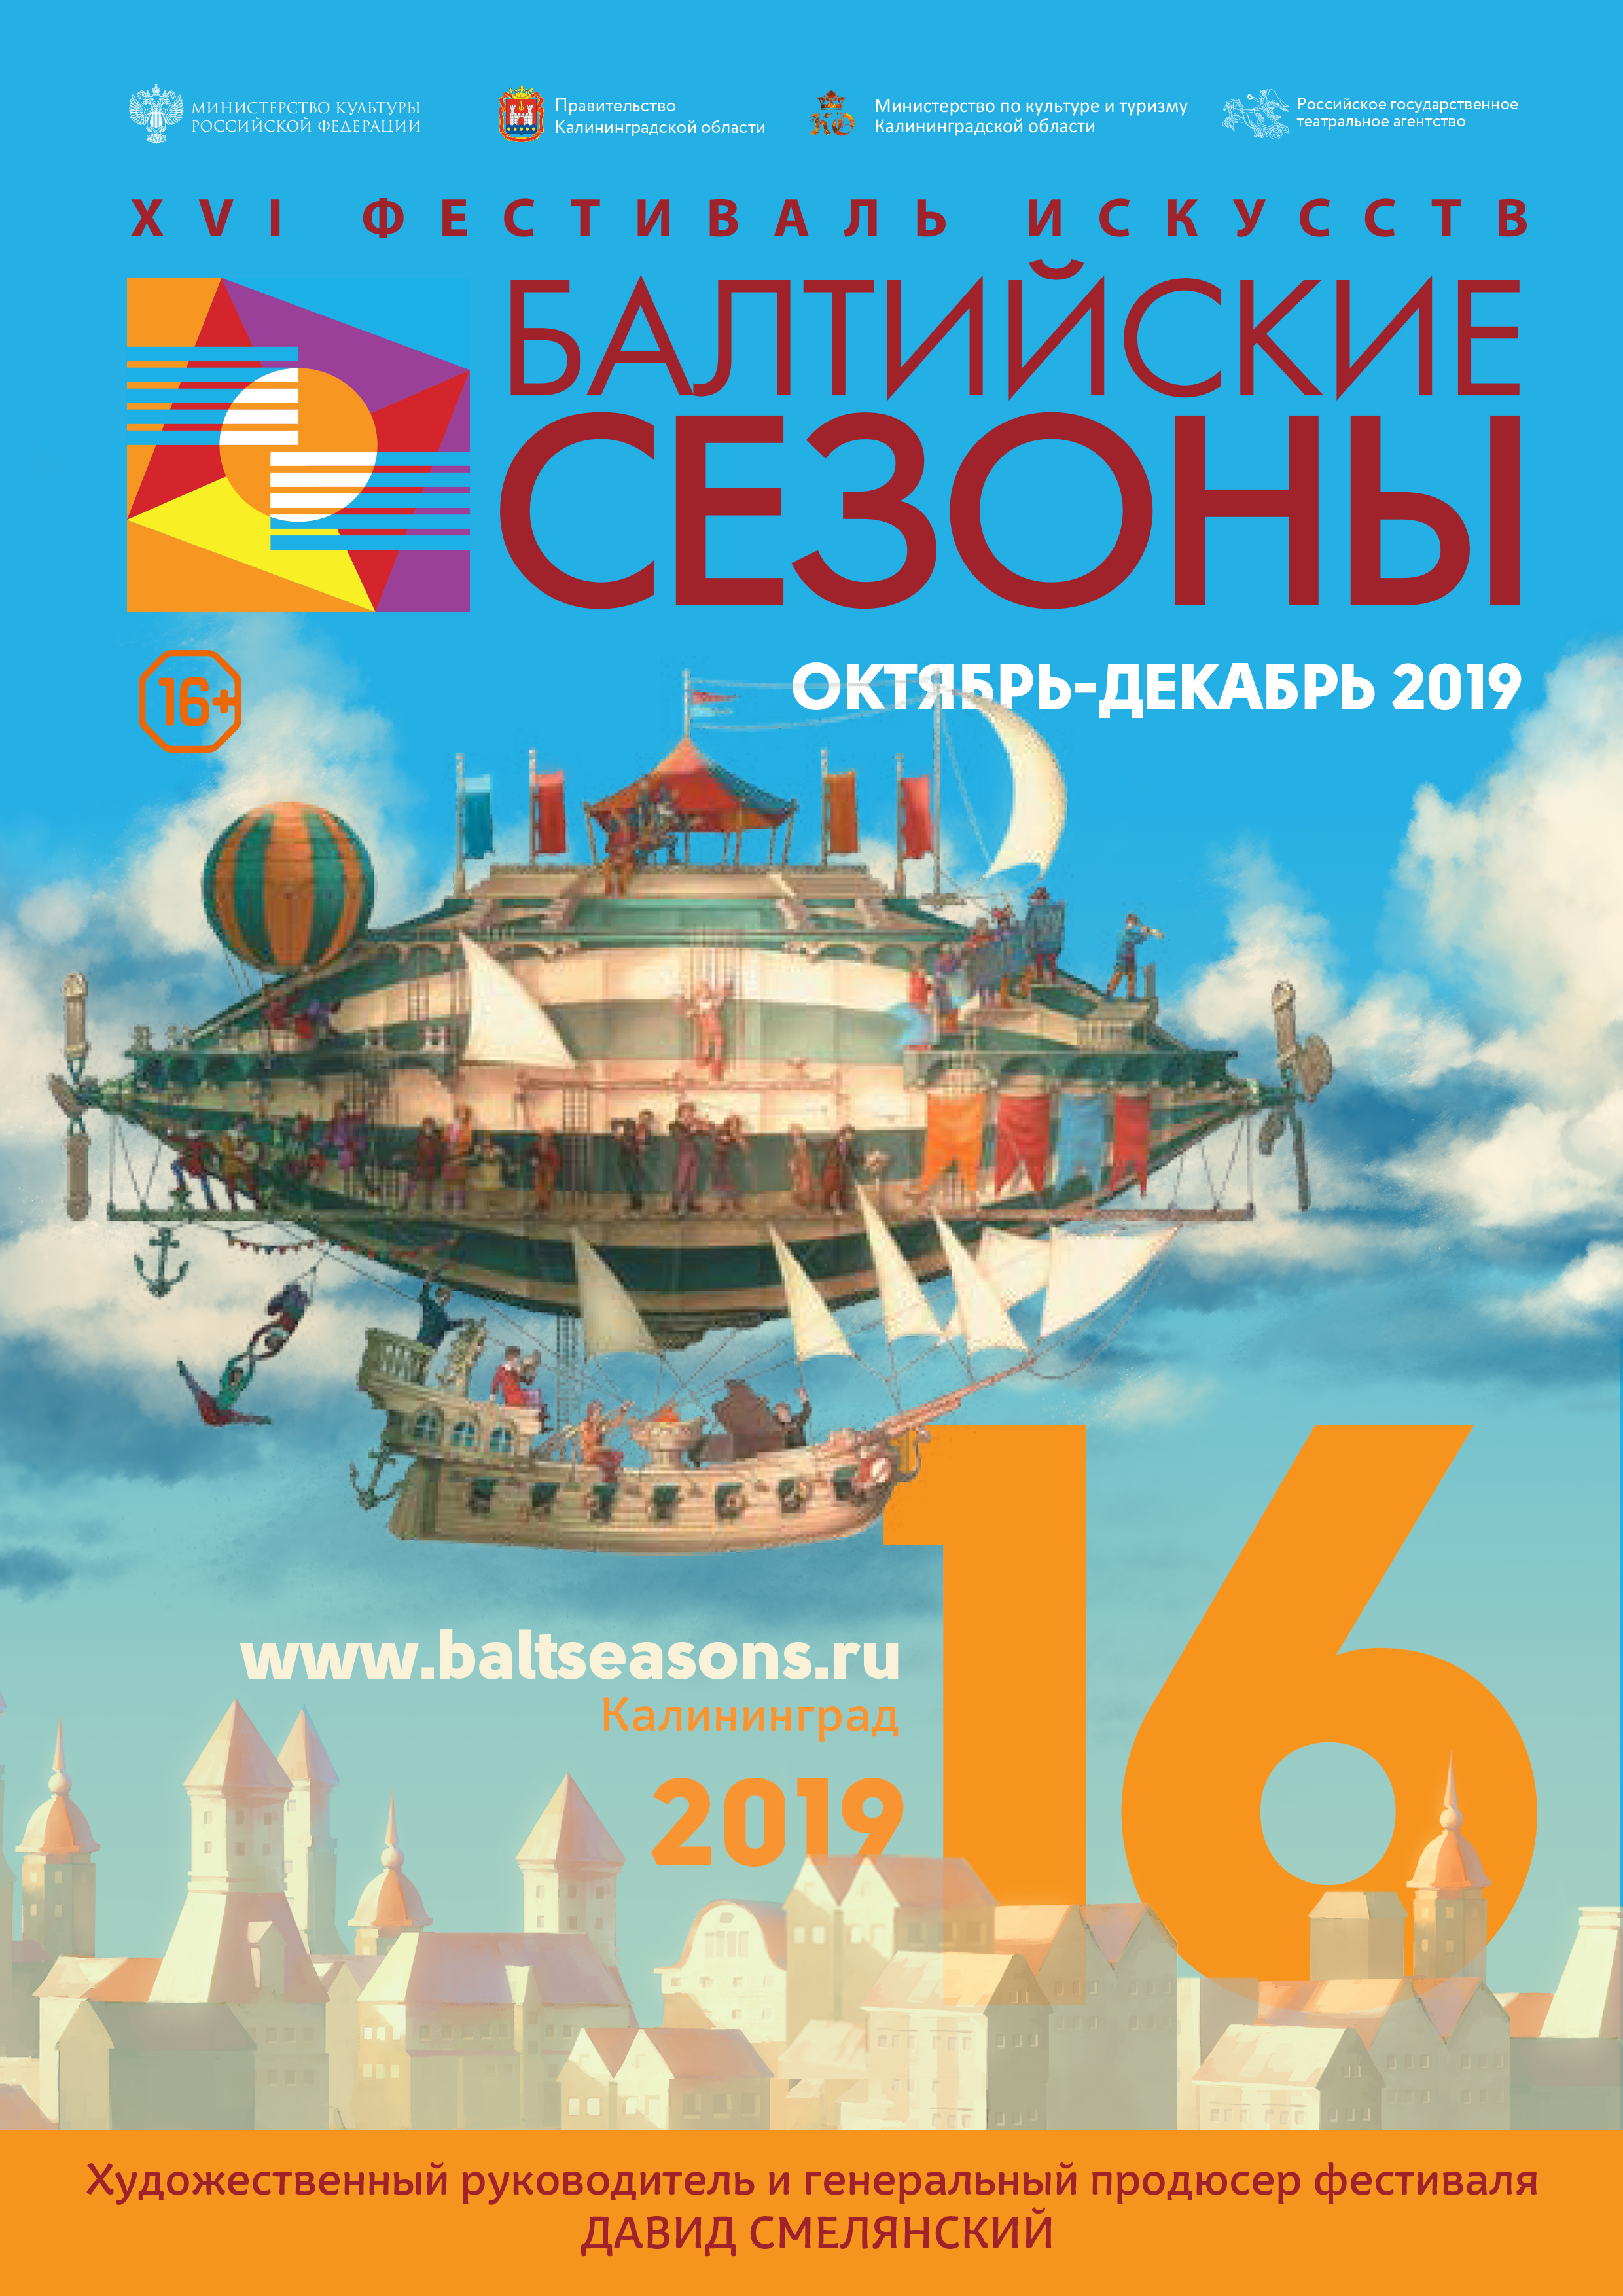 В Калининграде состоится открытие XVI Фестиваля искусств «Балтийские сезоны»